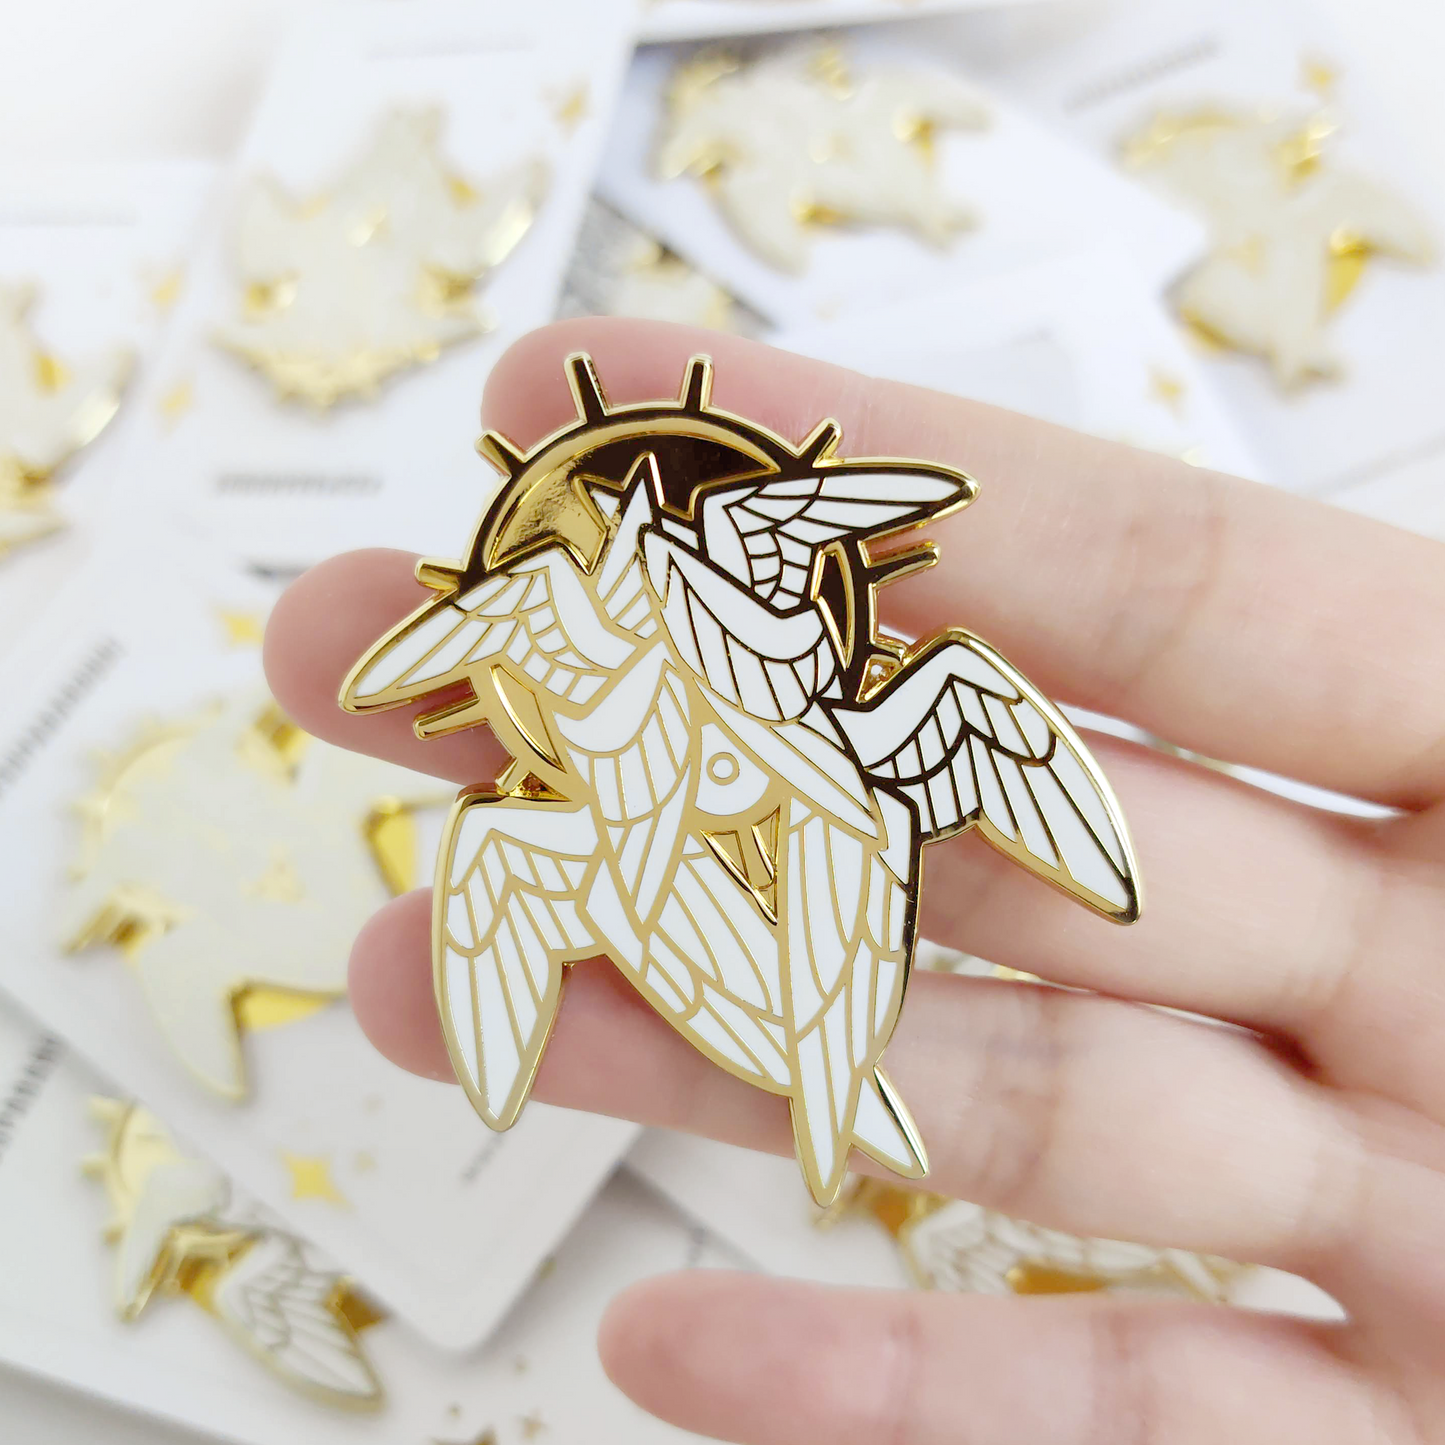 Seraphim - Enamel Pin - Gold